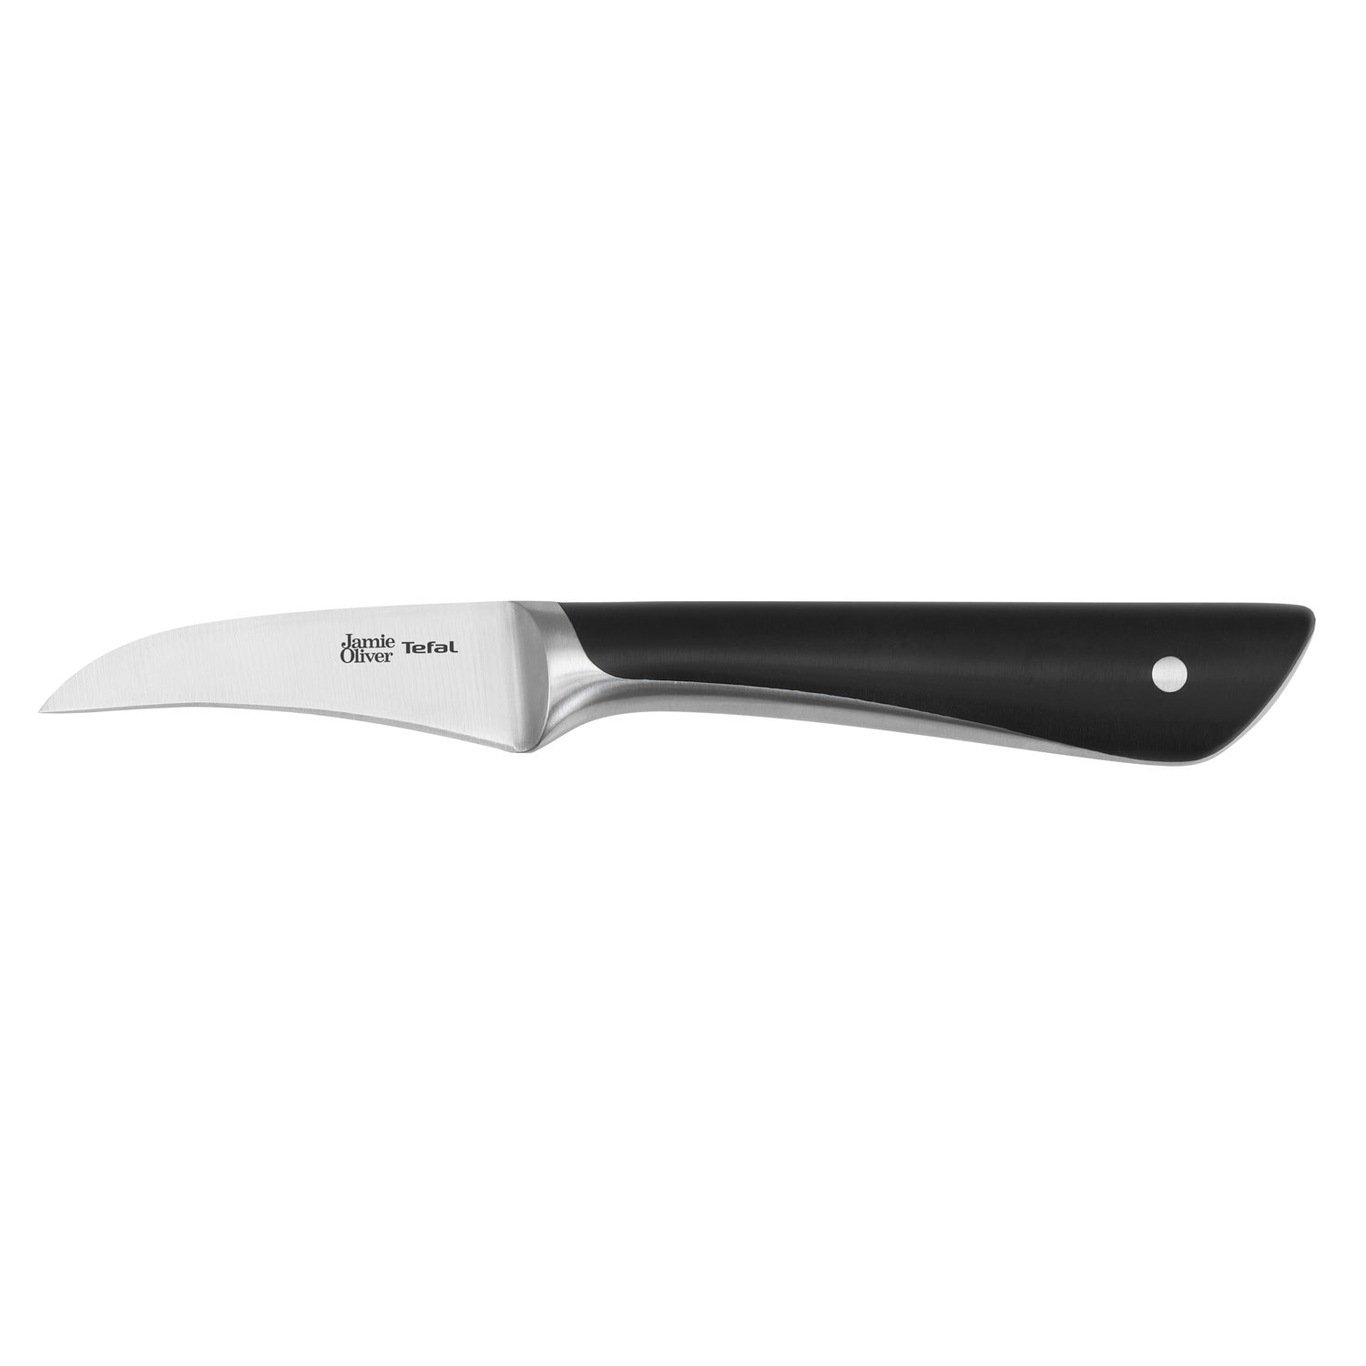 https://royaldesign.com/image/2/tefal-jamie-oliver-knife-7-cm-0?w=800&quality=80